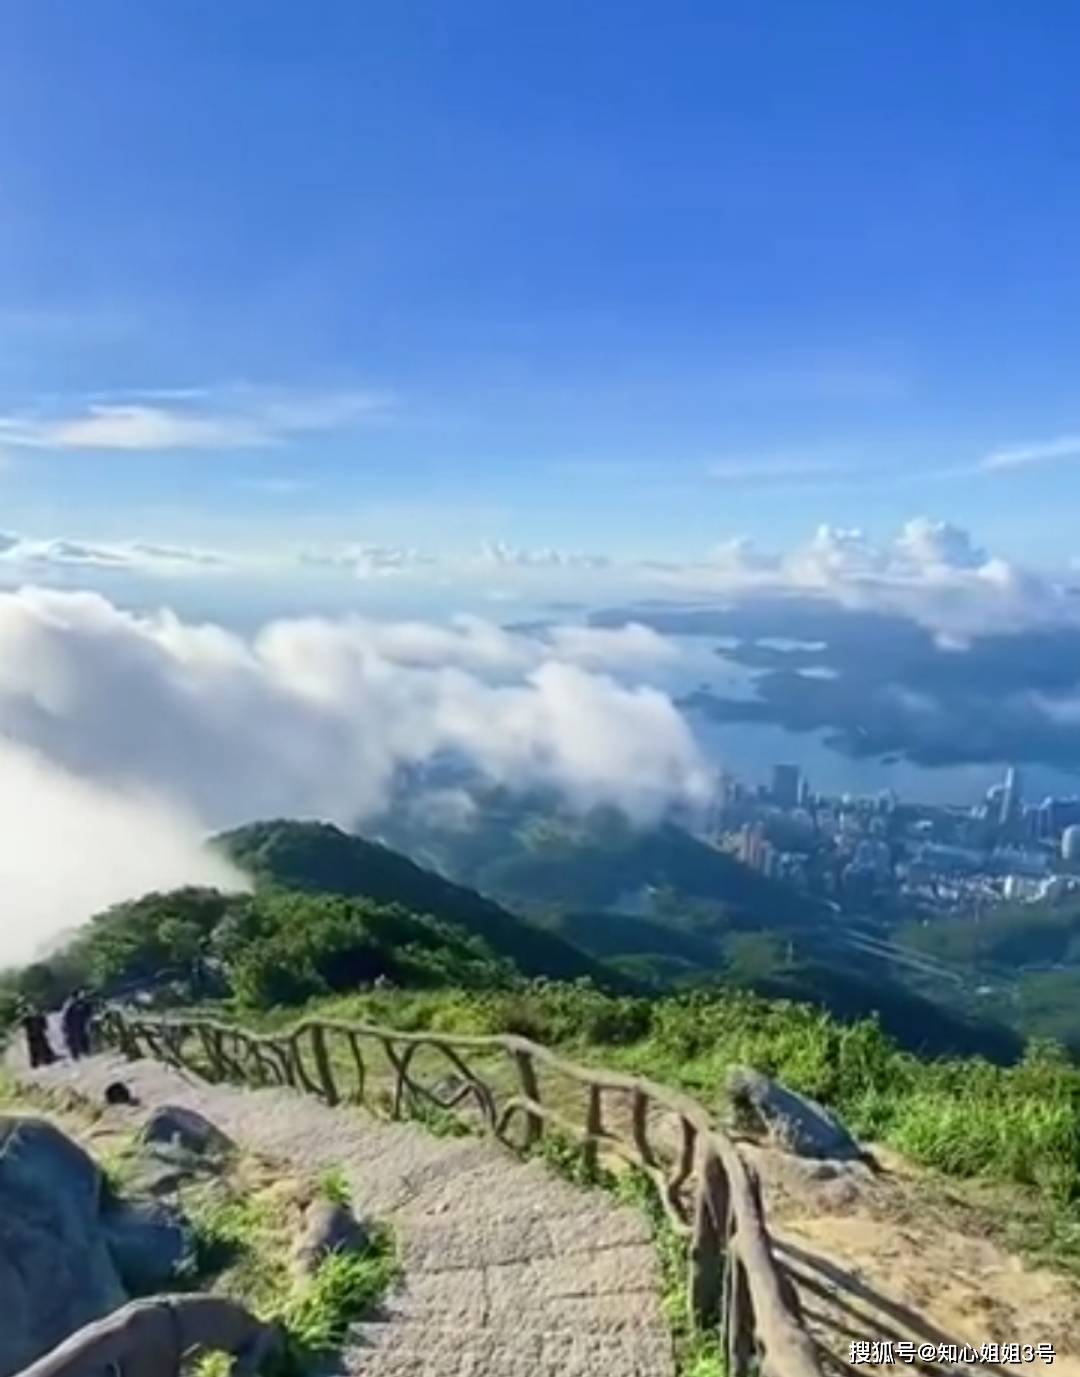 在广东一定要爬一次深圳梧桐山仙境般的云海美到让人窒息